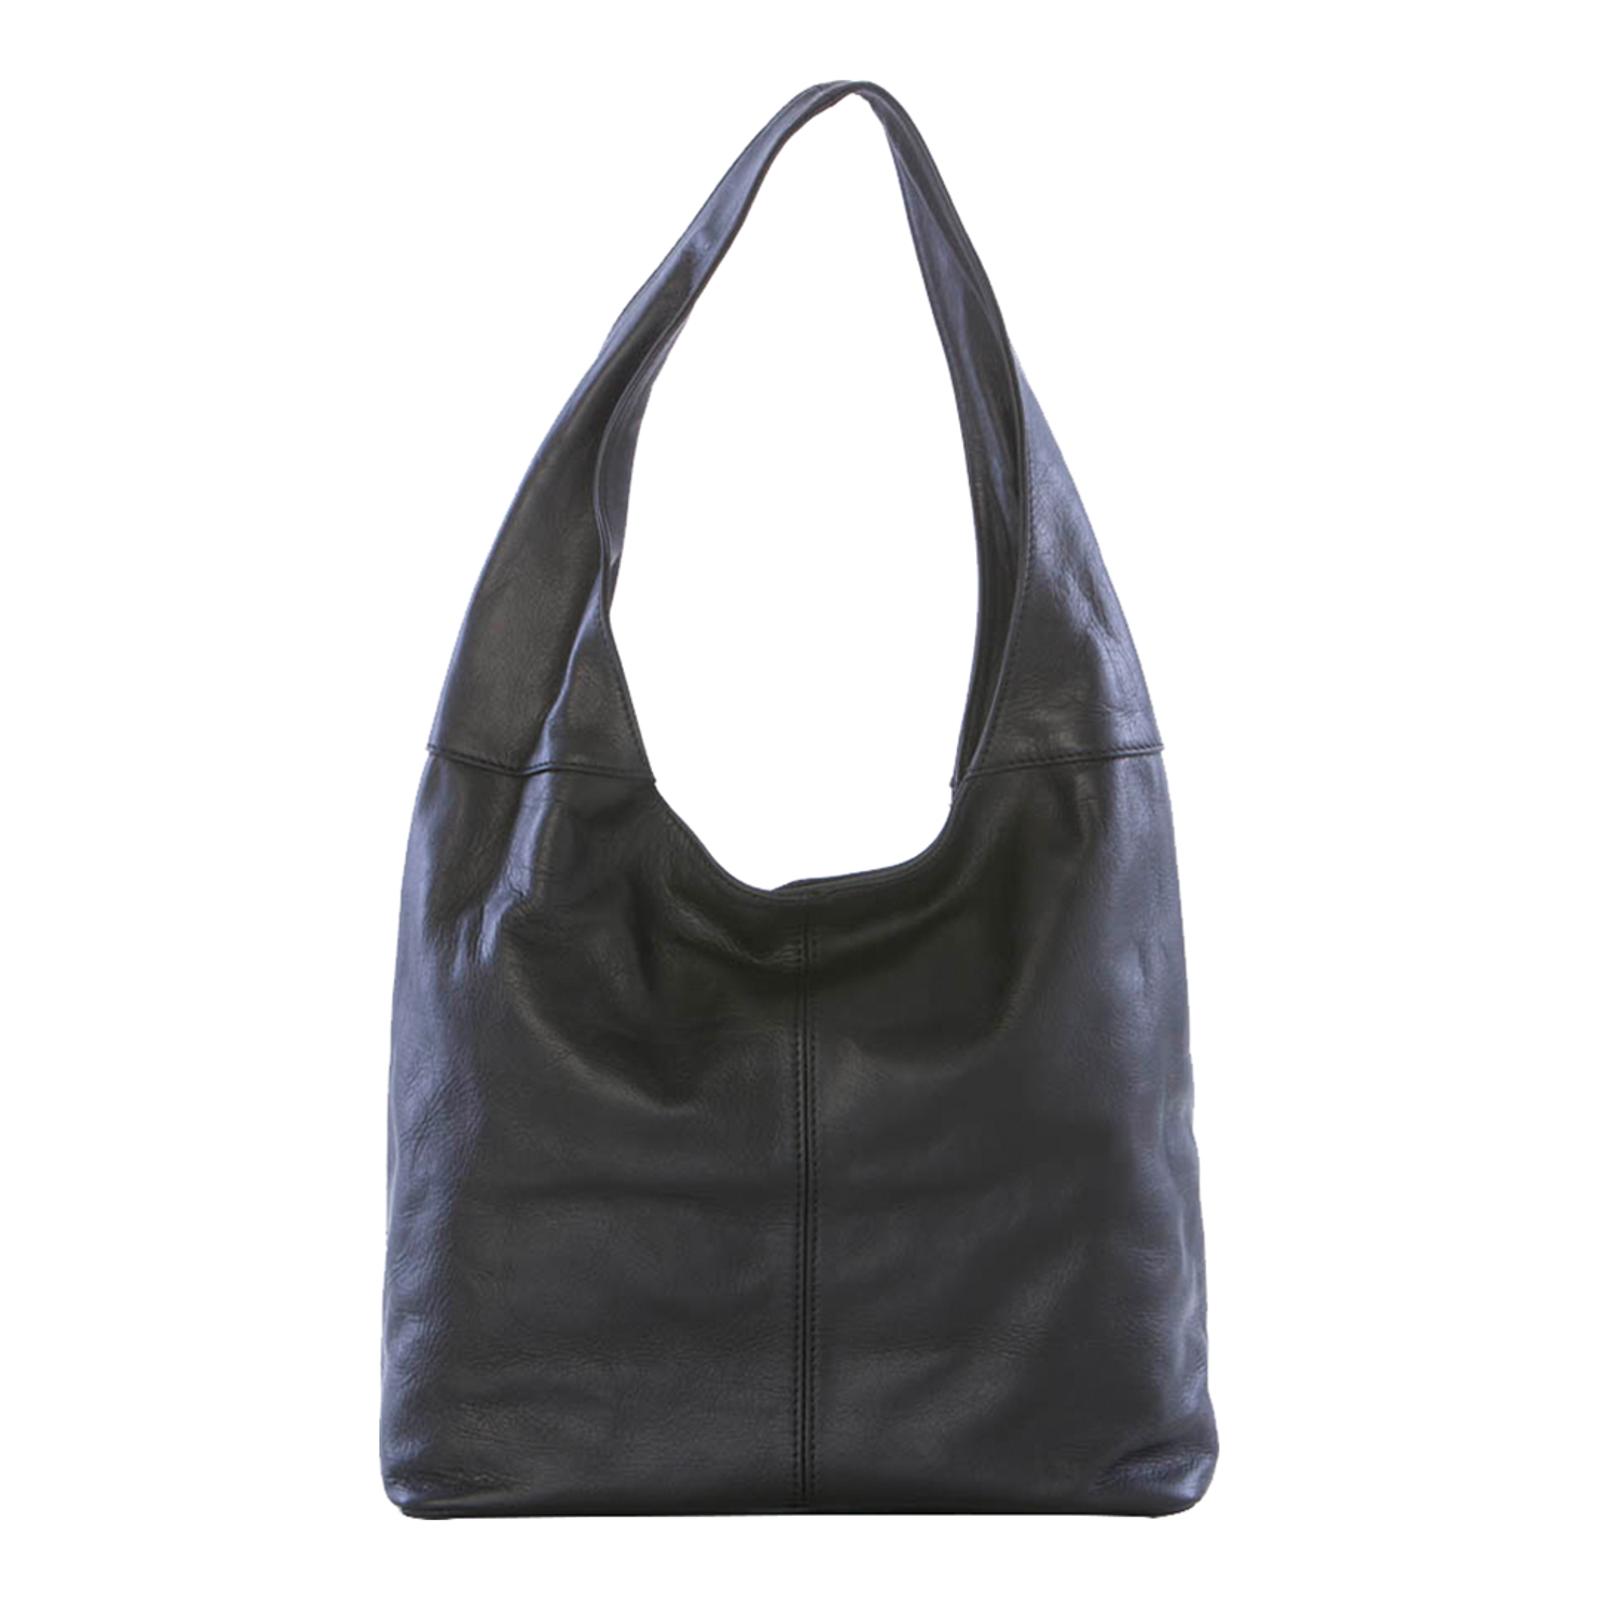 Black Leather Top Handle Shoulder Bag - BrandAlley